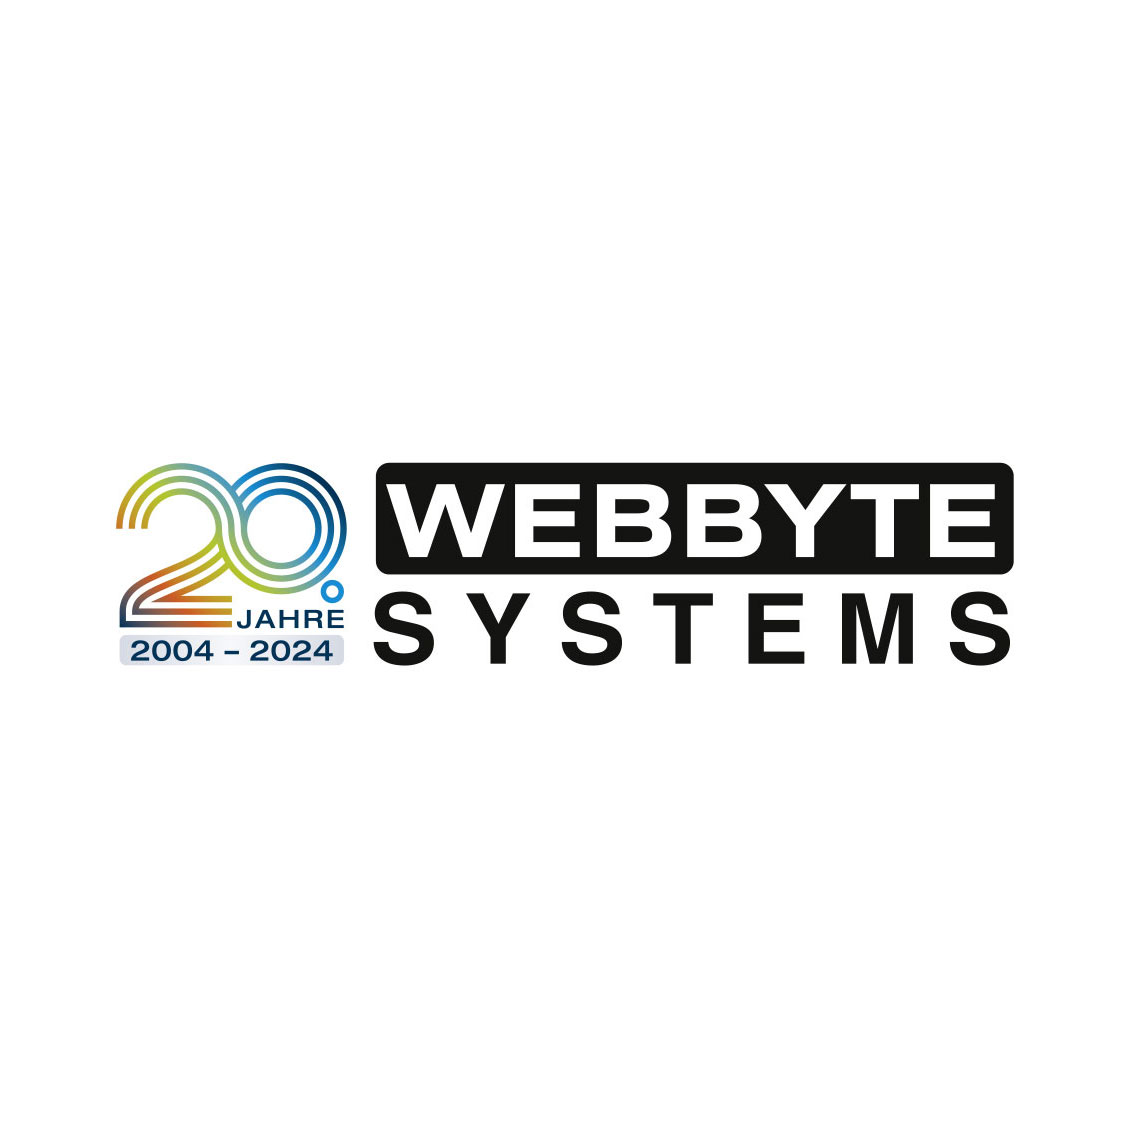 Darstellung des Jubiläums-Logos in der Langversion von Webbyte Systems auch Neubrandenburg zum 20-jährigen Firmenjubiläum.